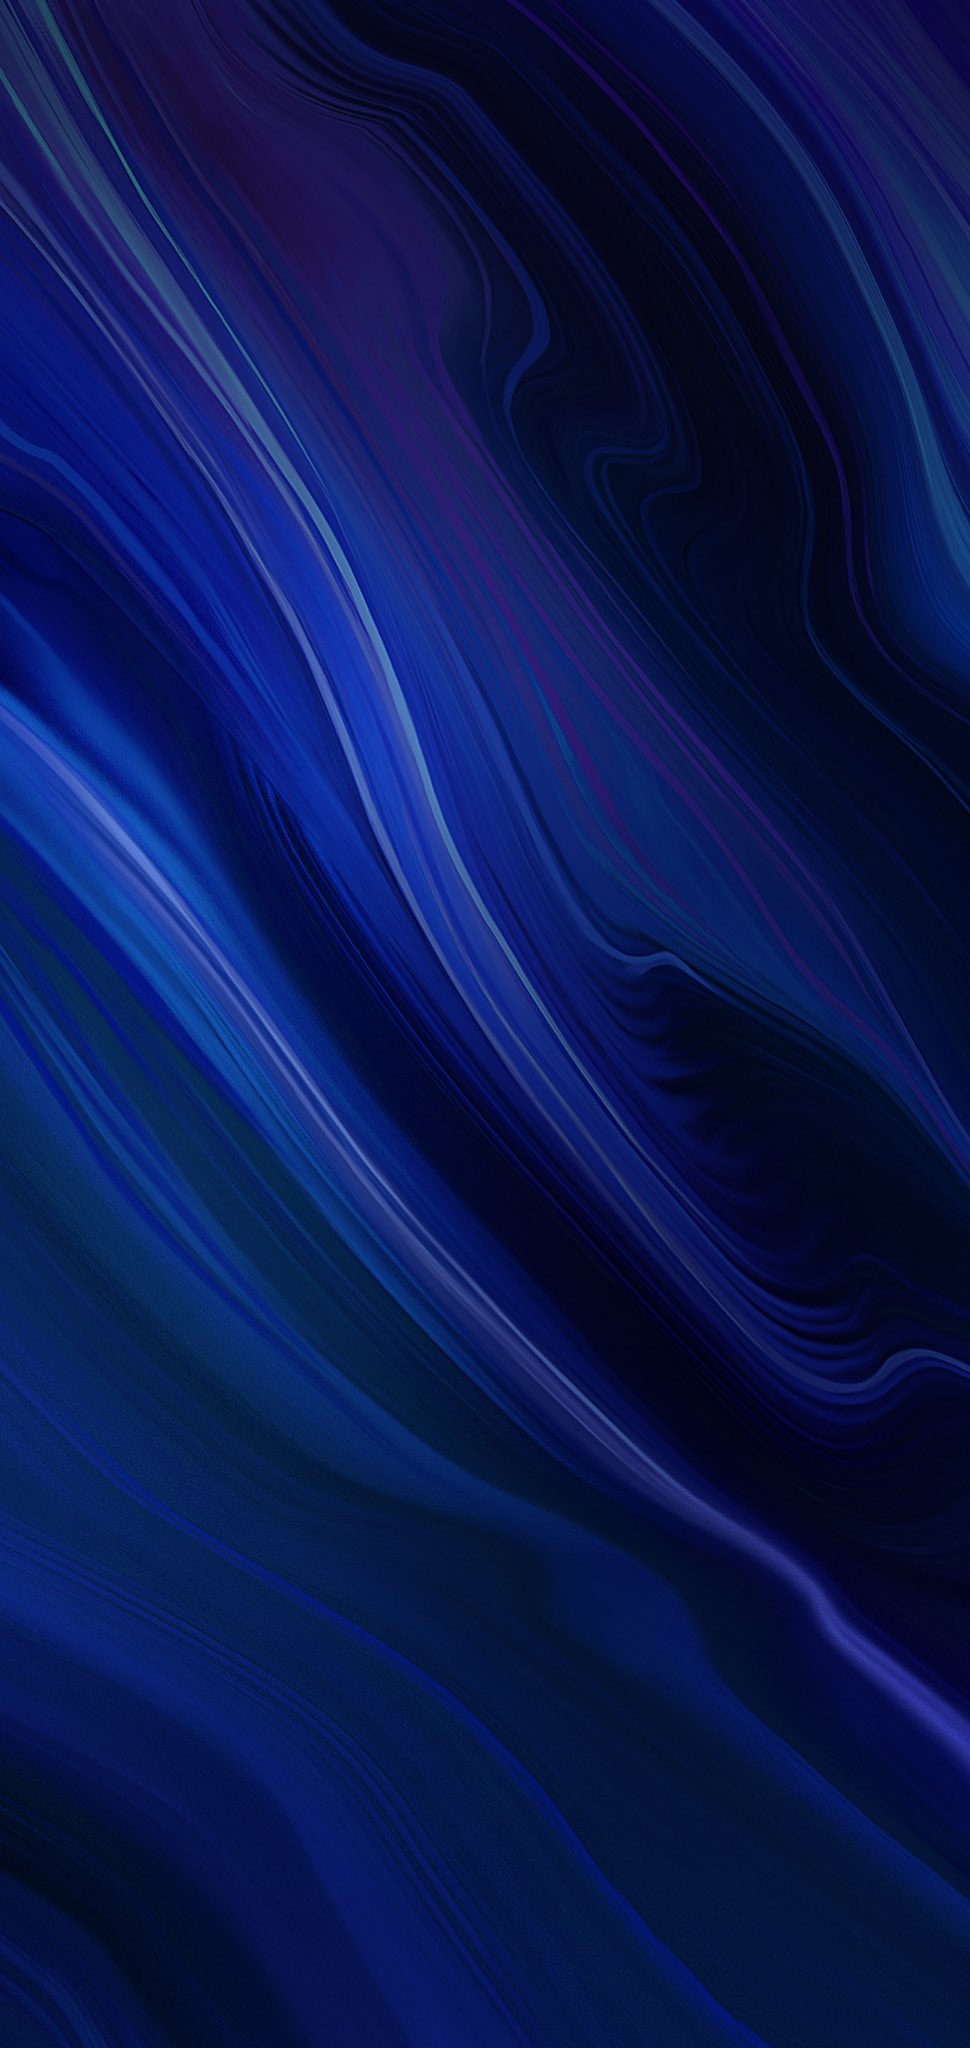 Fond d'écran bleu pacifique iphone idtéléchargerblog smartechdaily abstract